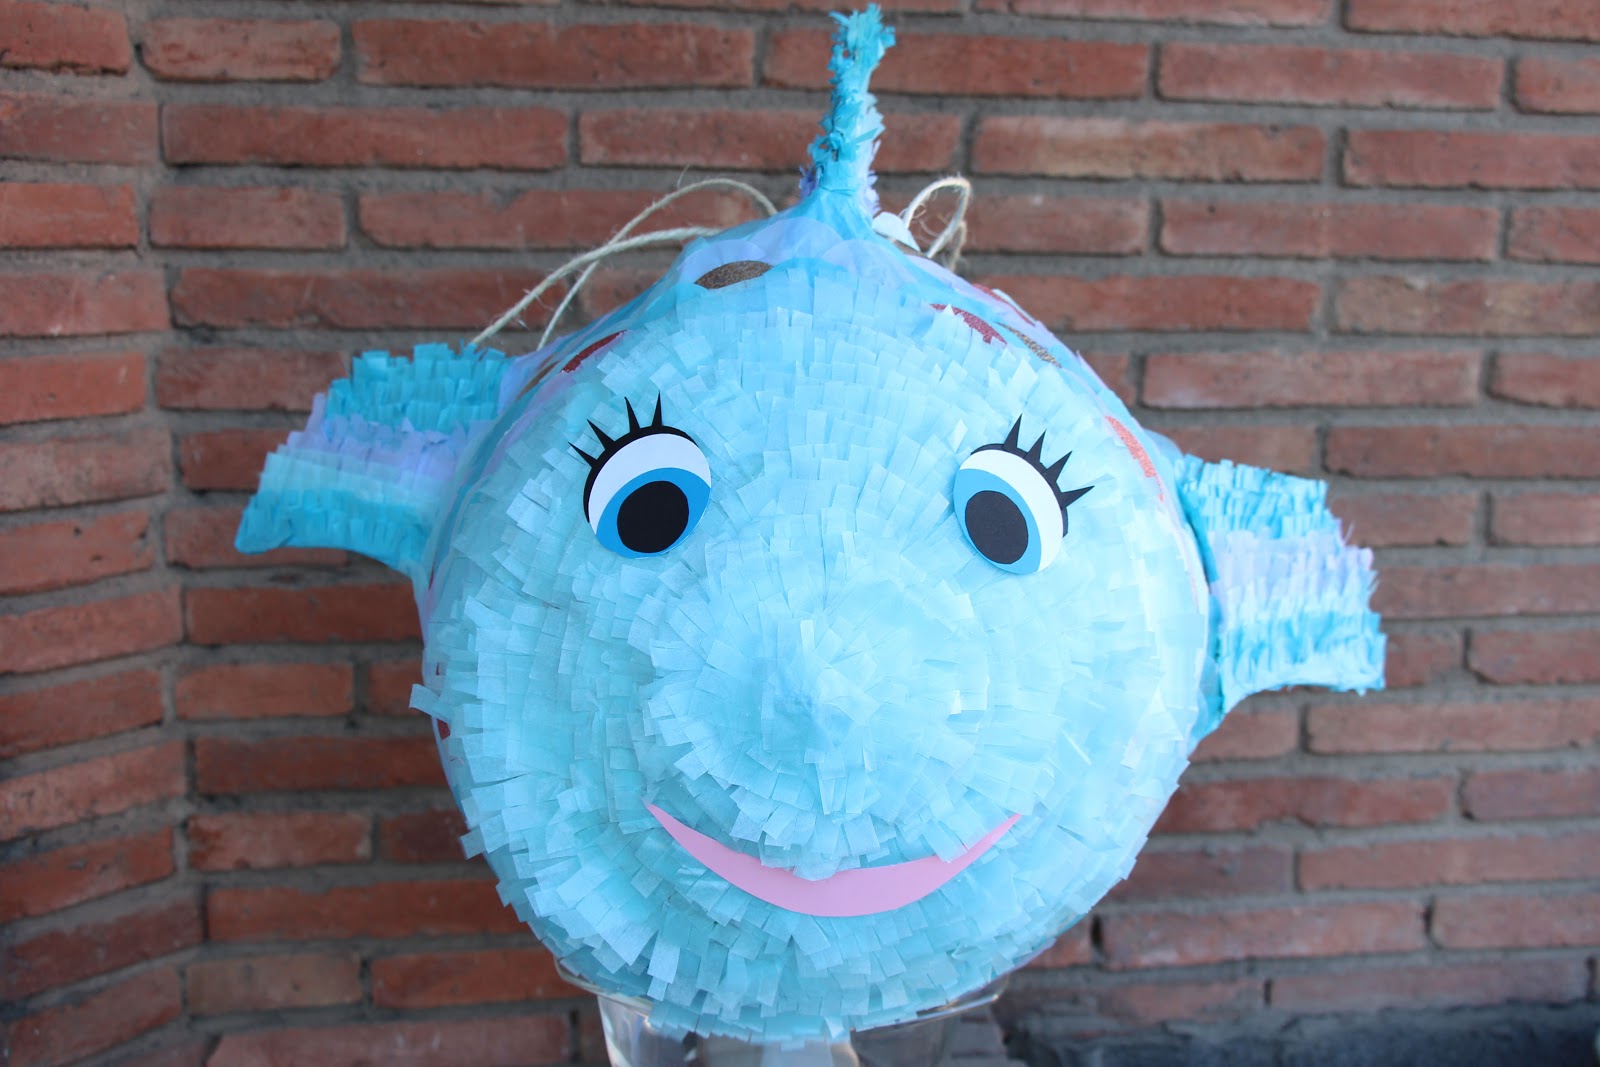 Instalación para ver caballo de fuerza Mardefiesta: Piñata pez